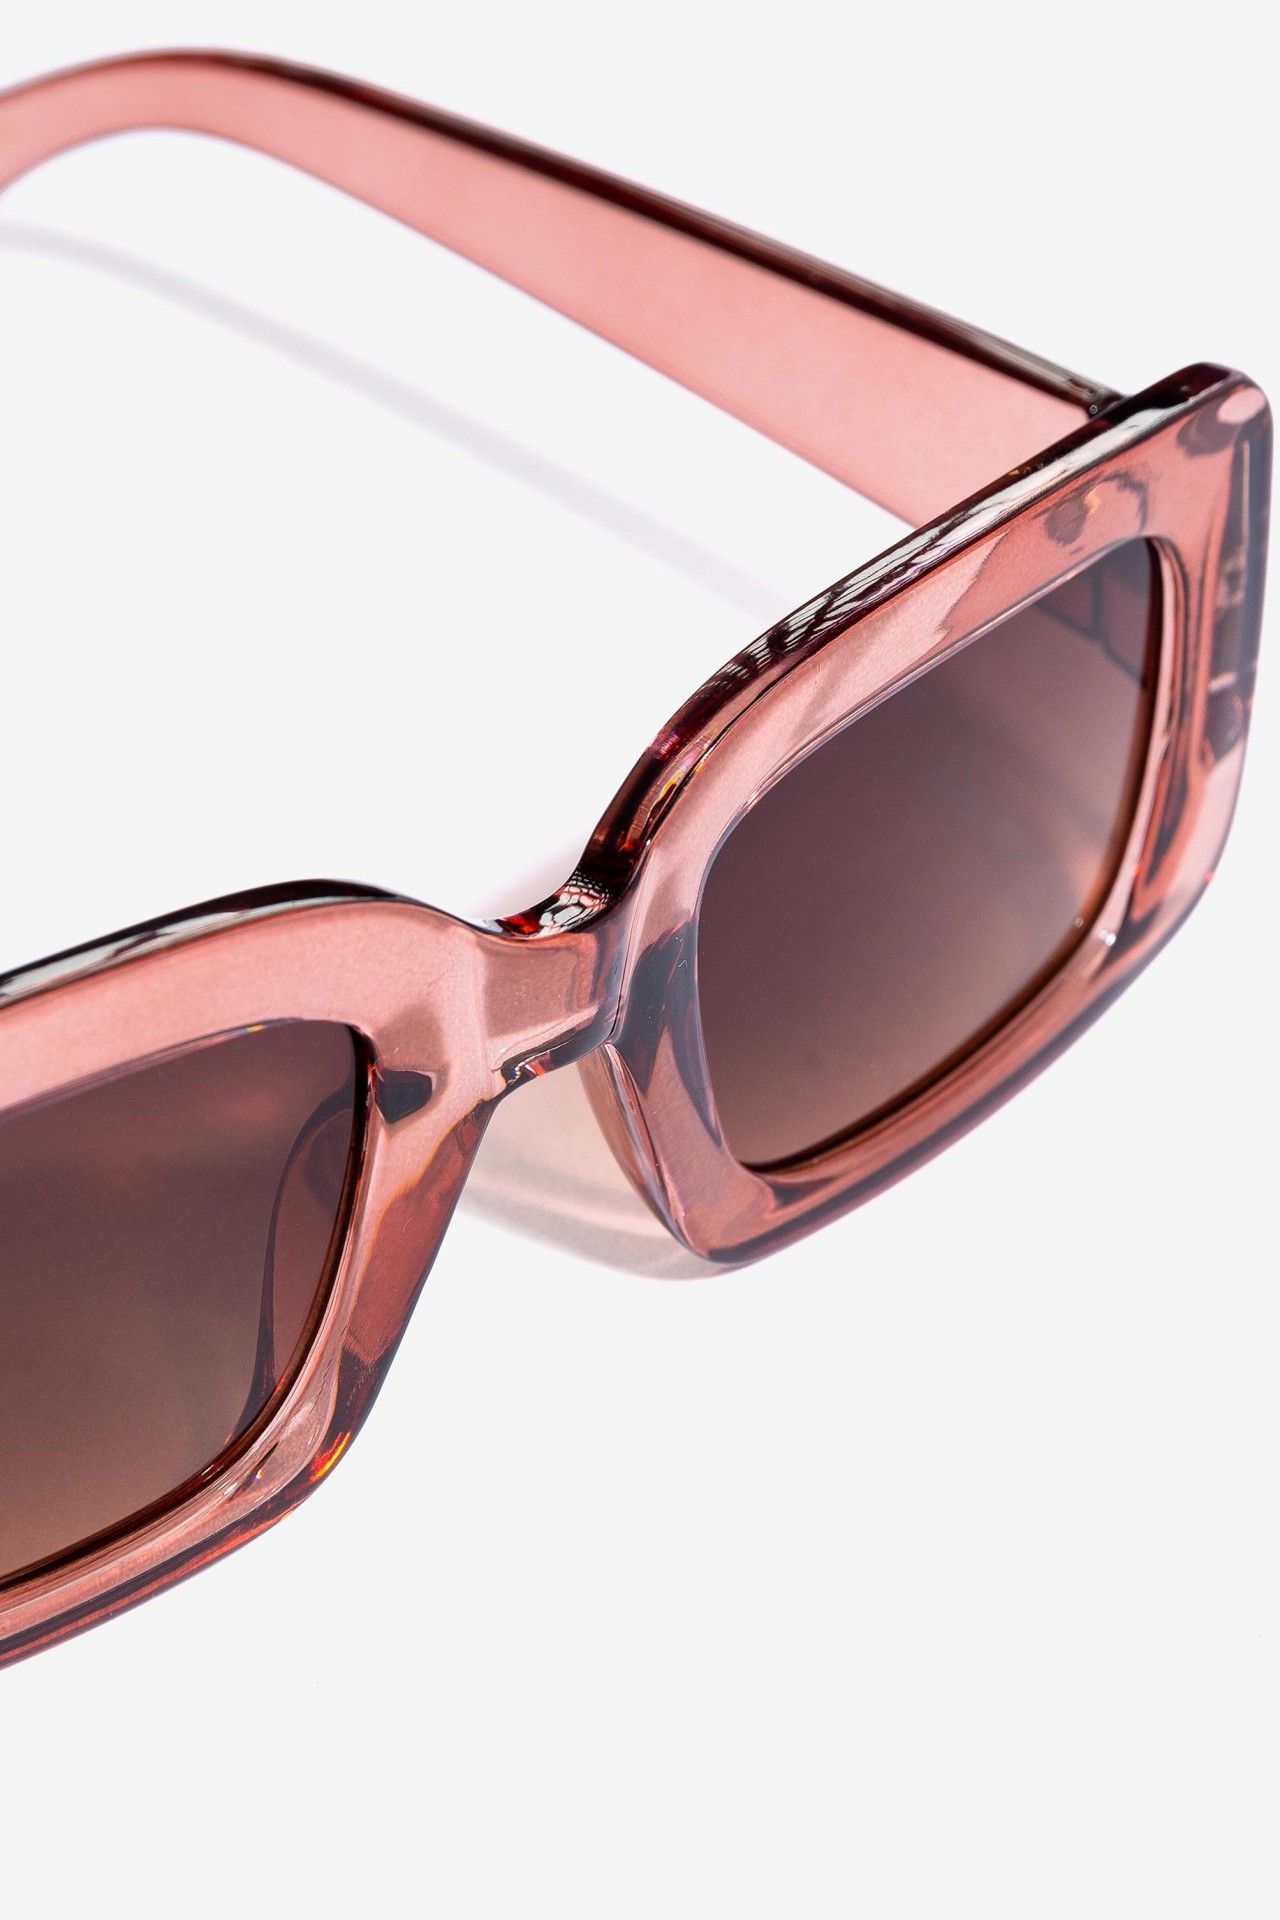 Gafas de sol de pasta transparente en color rosa. Modelo 71006979 de Vilanova.